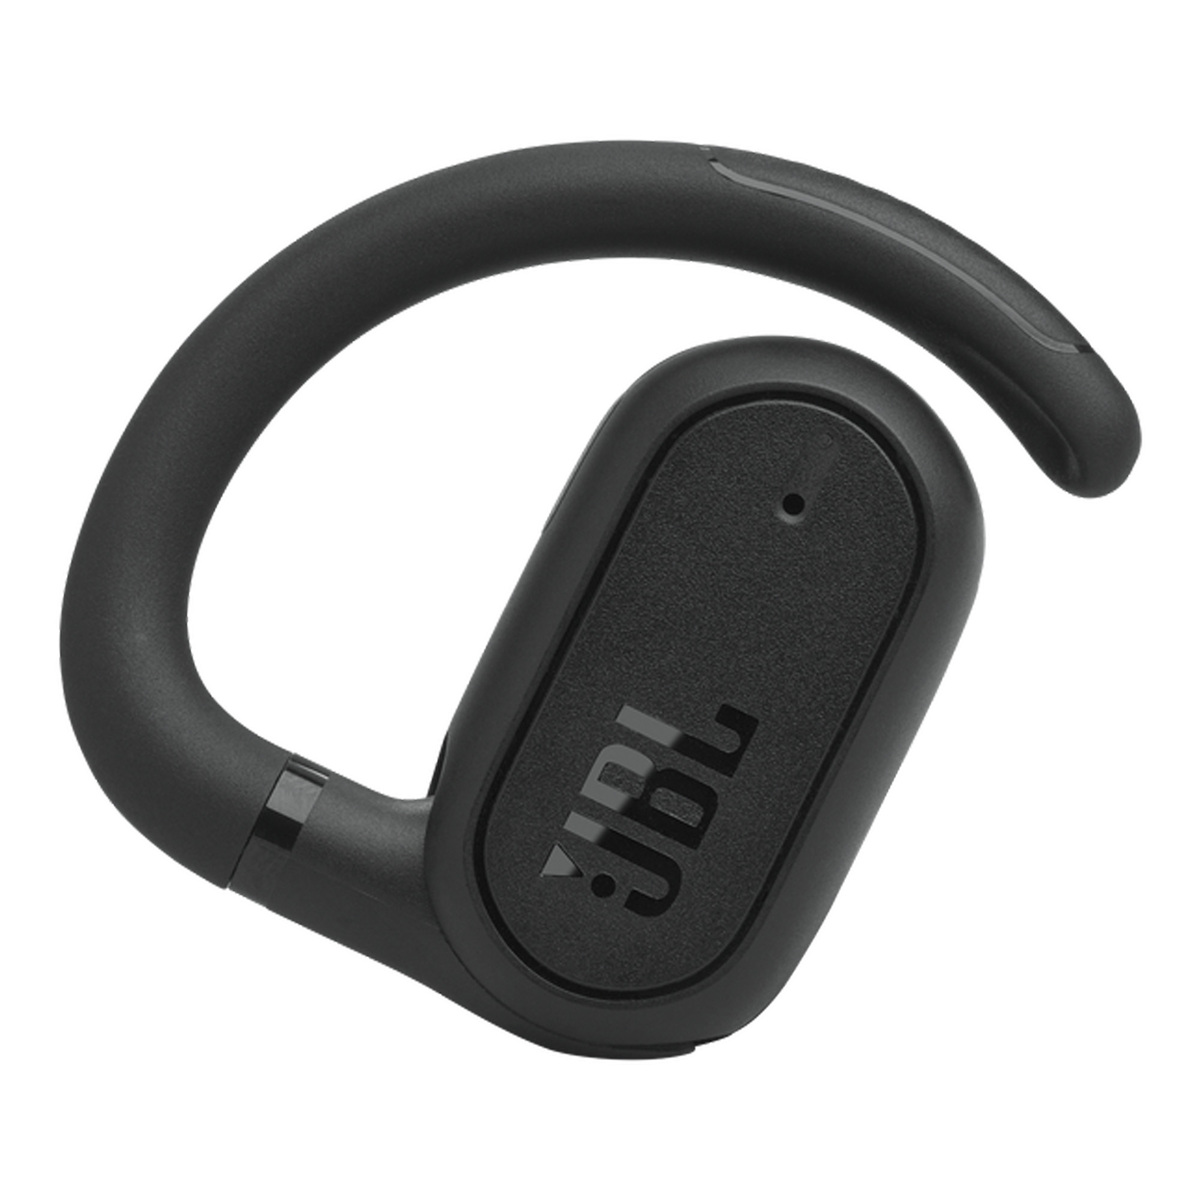 JBL Soundgear Sense True Wireless Open-ear Earbuds, Black